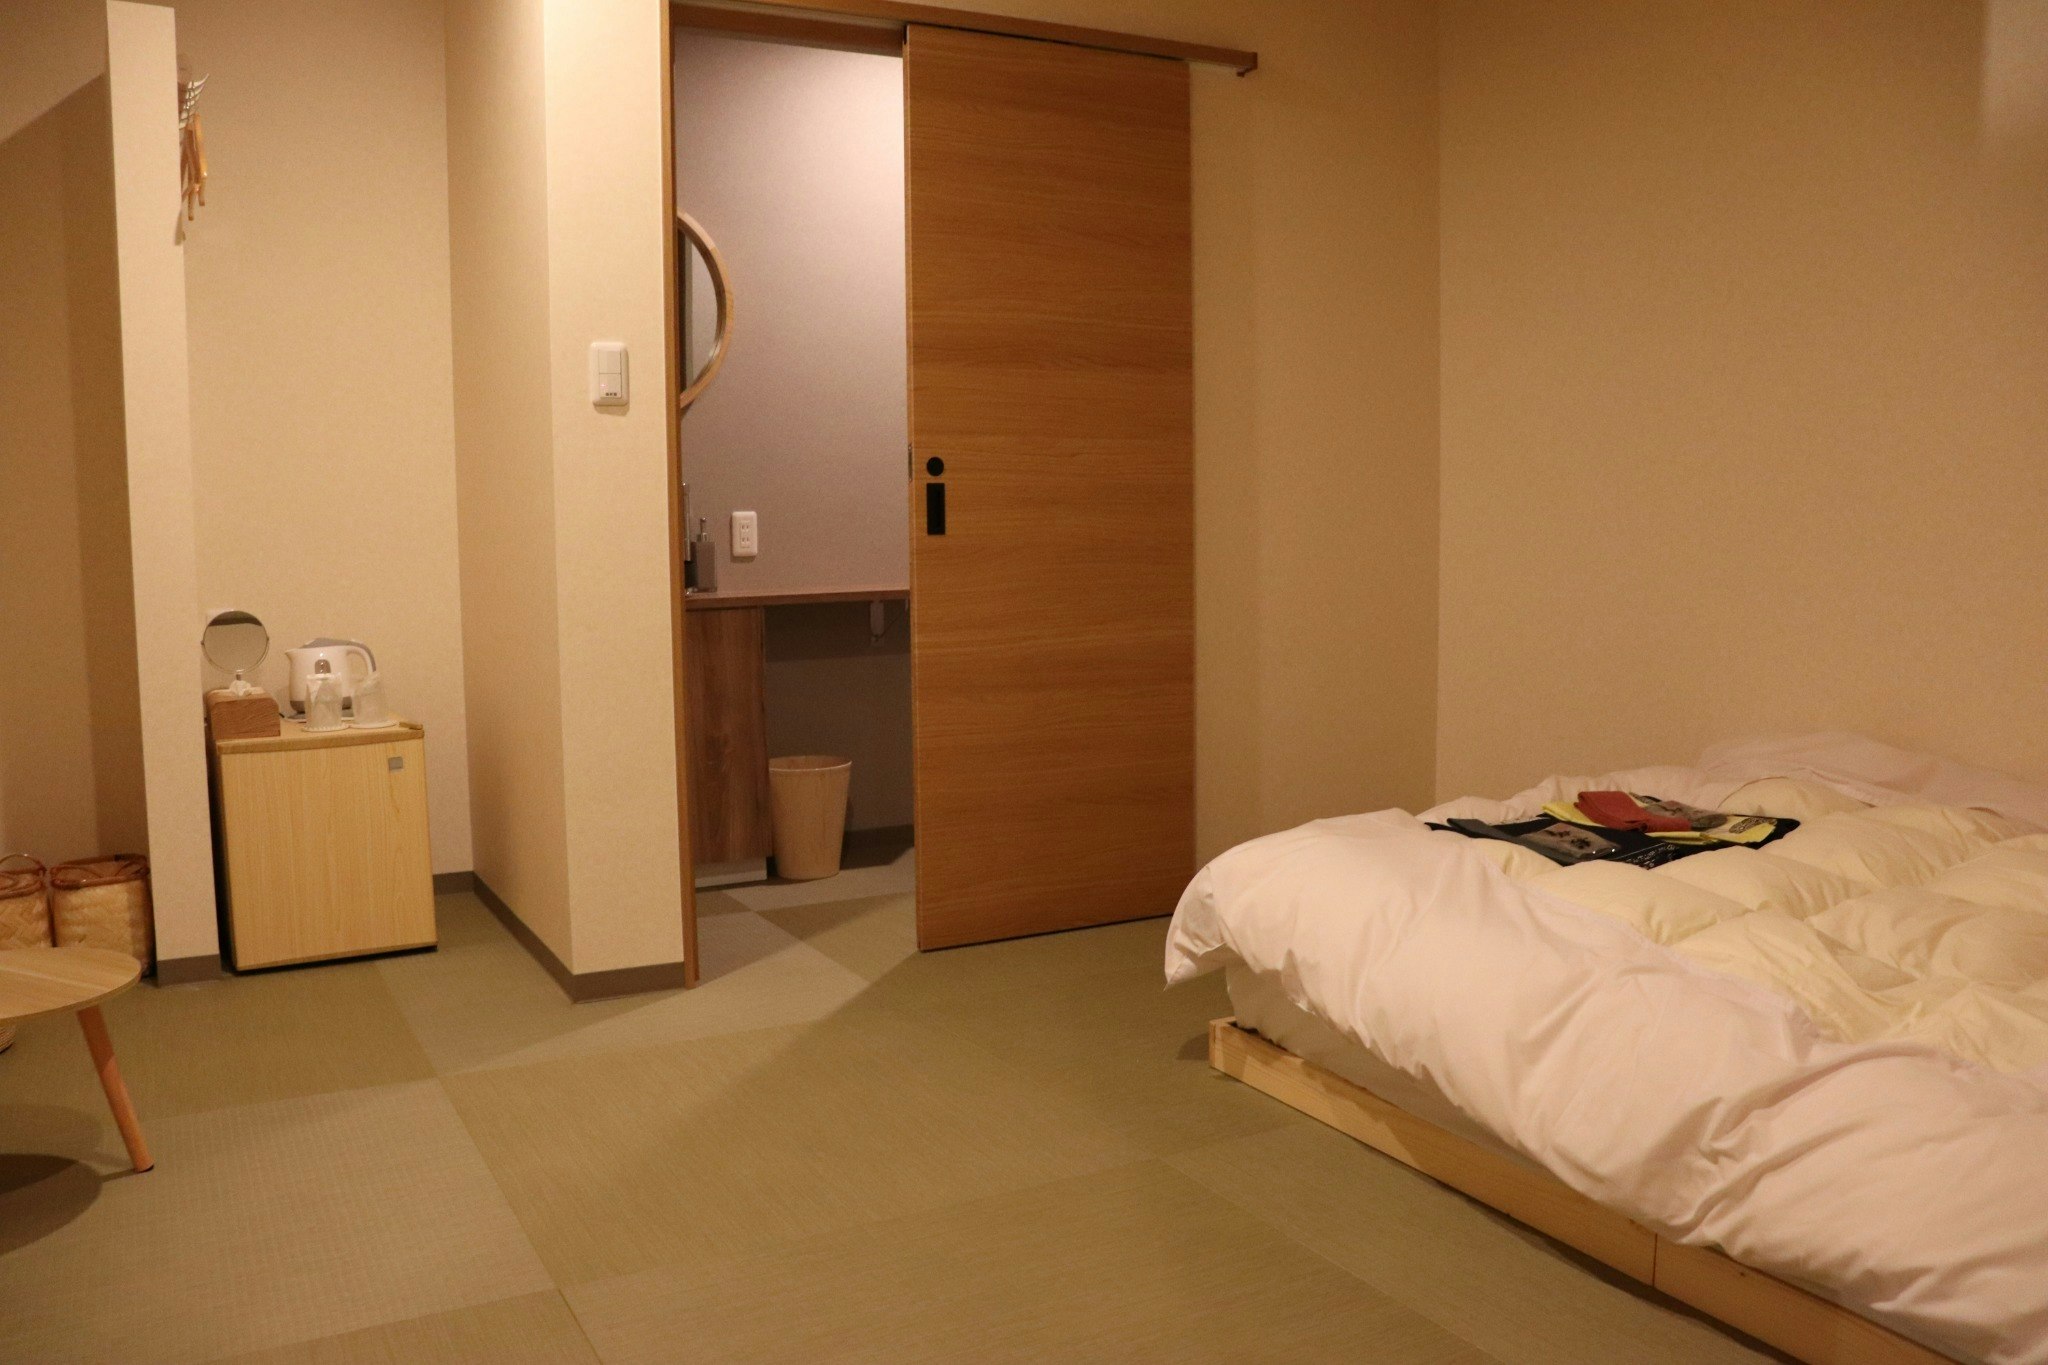 203城崎温泉駅から徒歩一分!今なら一階カフェのモーニングセットと2階「華」のレンタル浴衣が無料!